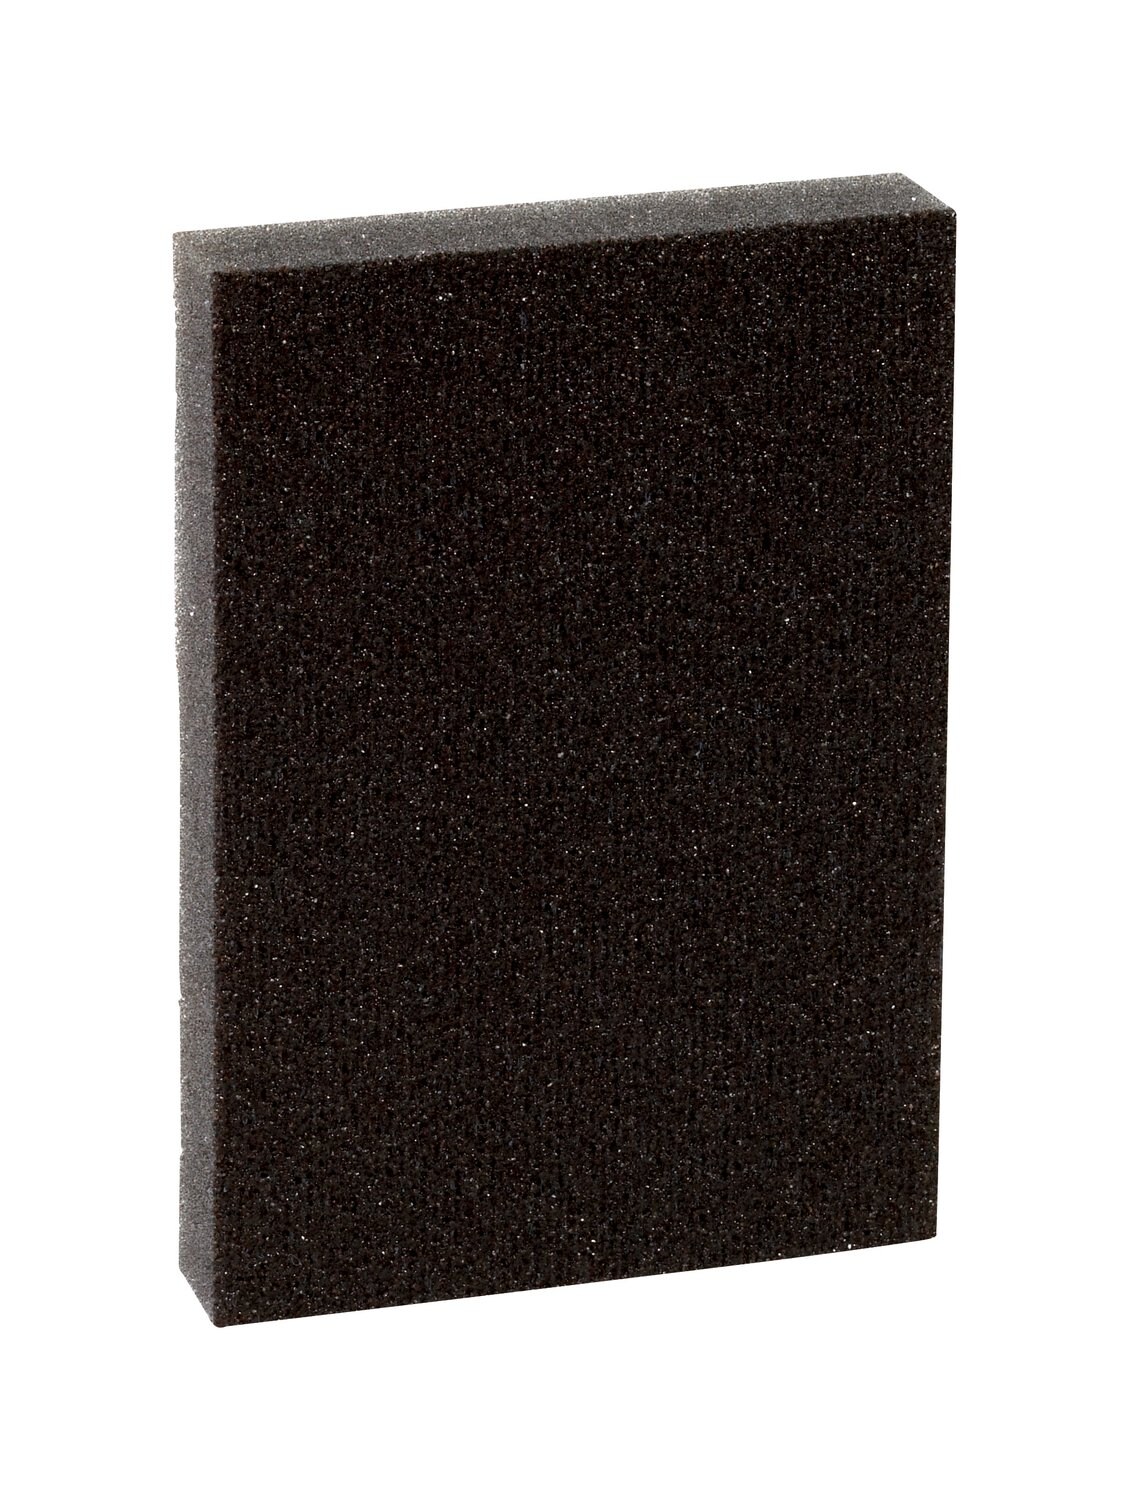 7100097672 - 3M Pro-Pad Sanding Sponge, PRPD-60, 2.88 in x 4 in x .5 in, 60 Grit,
54/cs